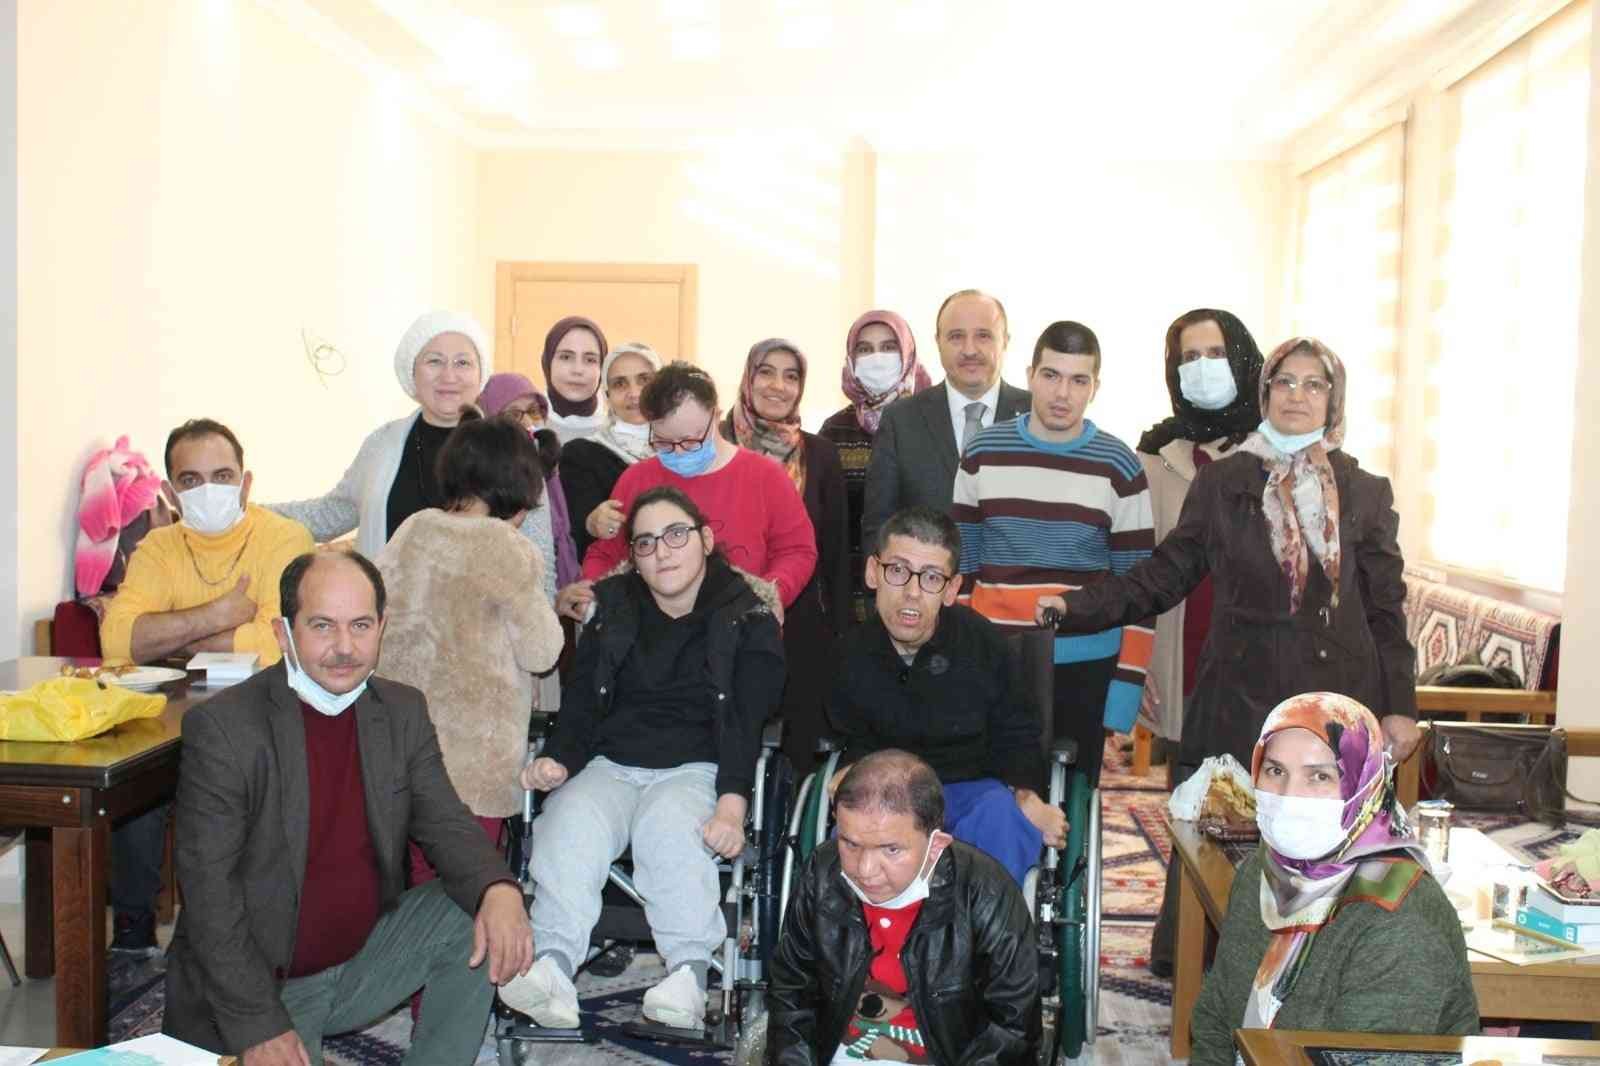 Aydın İl Müftülüğü engellilere yönelik etkinlik düzenledi #aydin